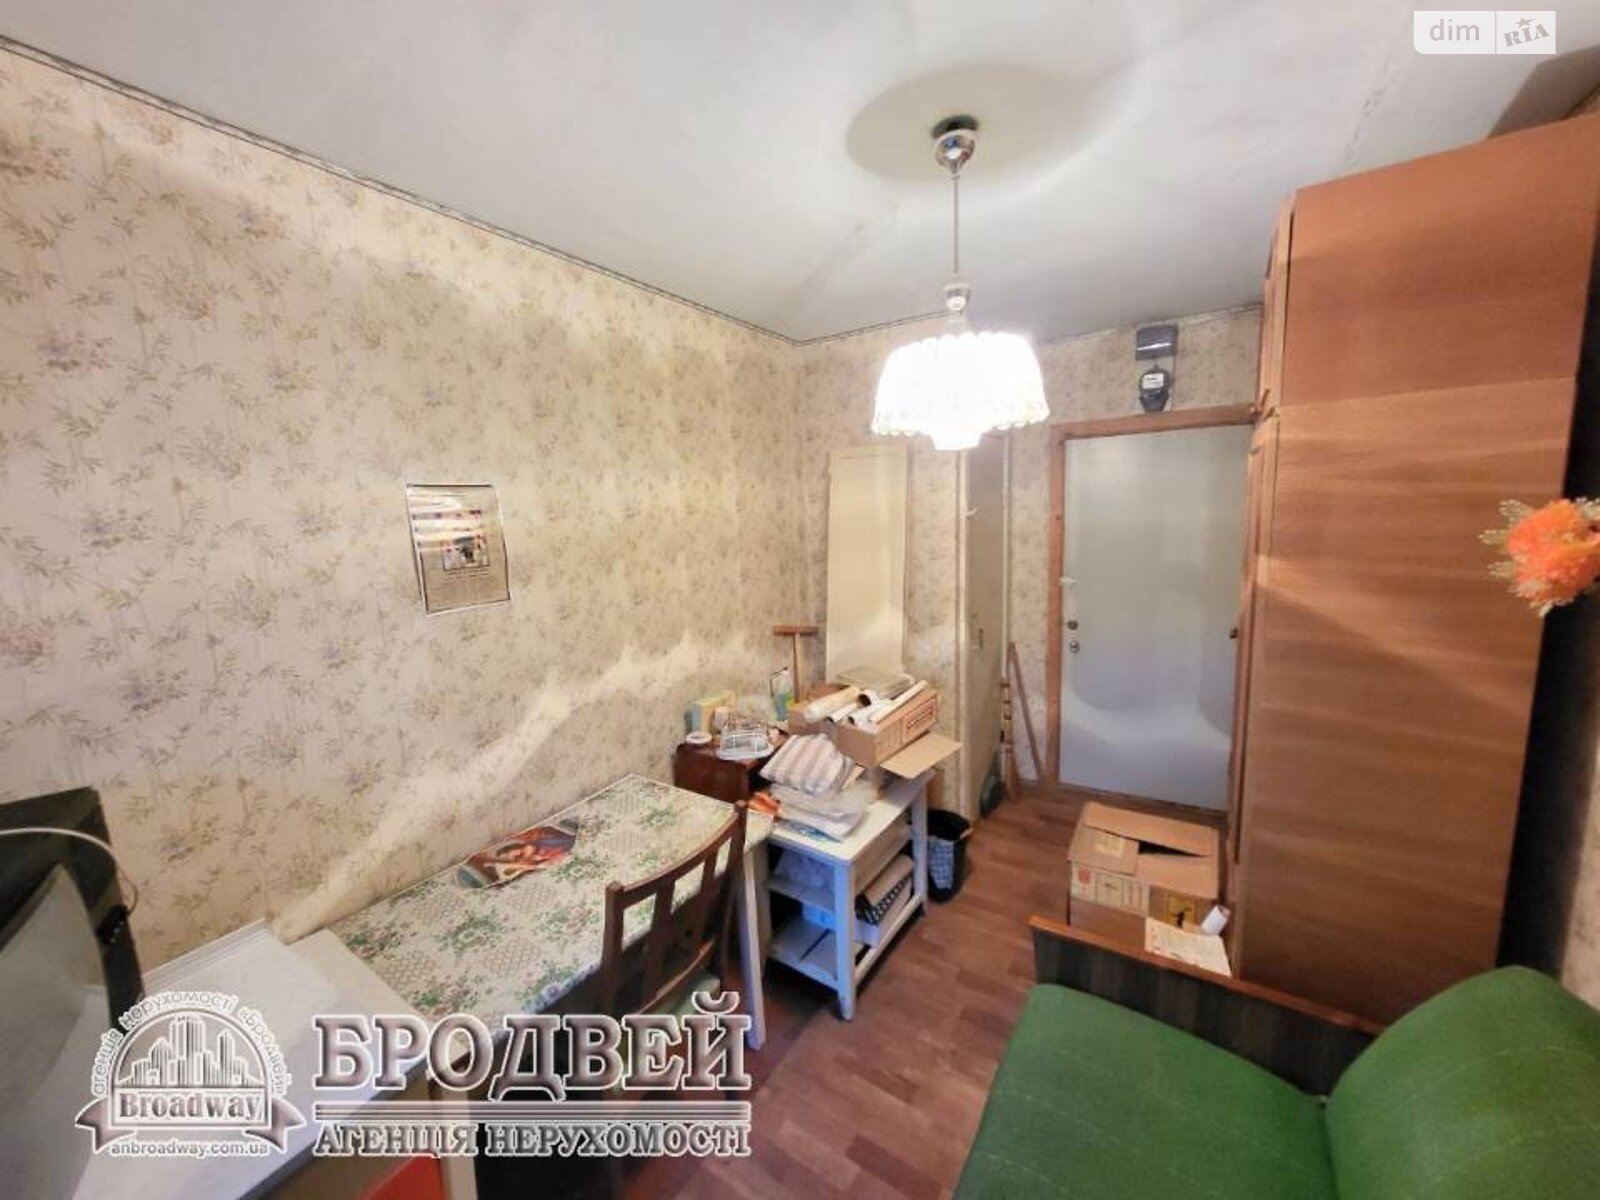 Кімната в Чернігові на вул. Текстильників 8 в районі Шерстянка на продаж фото 1